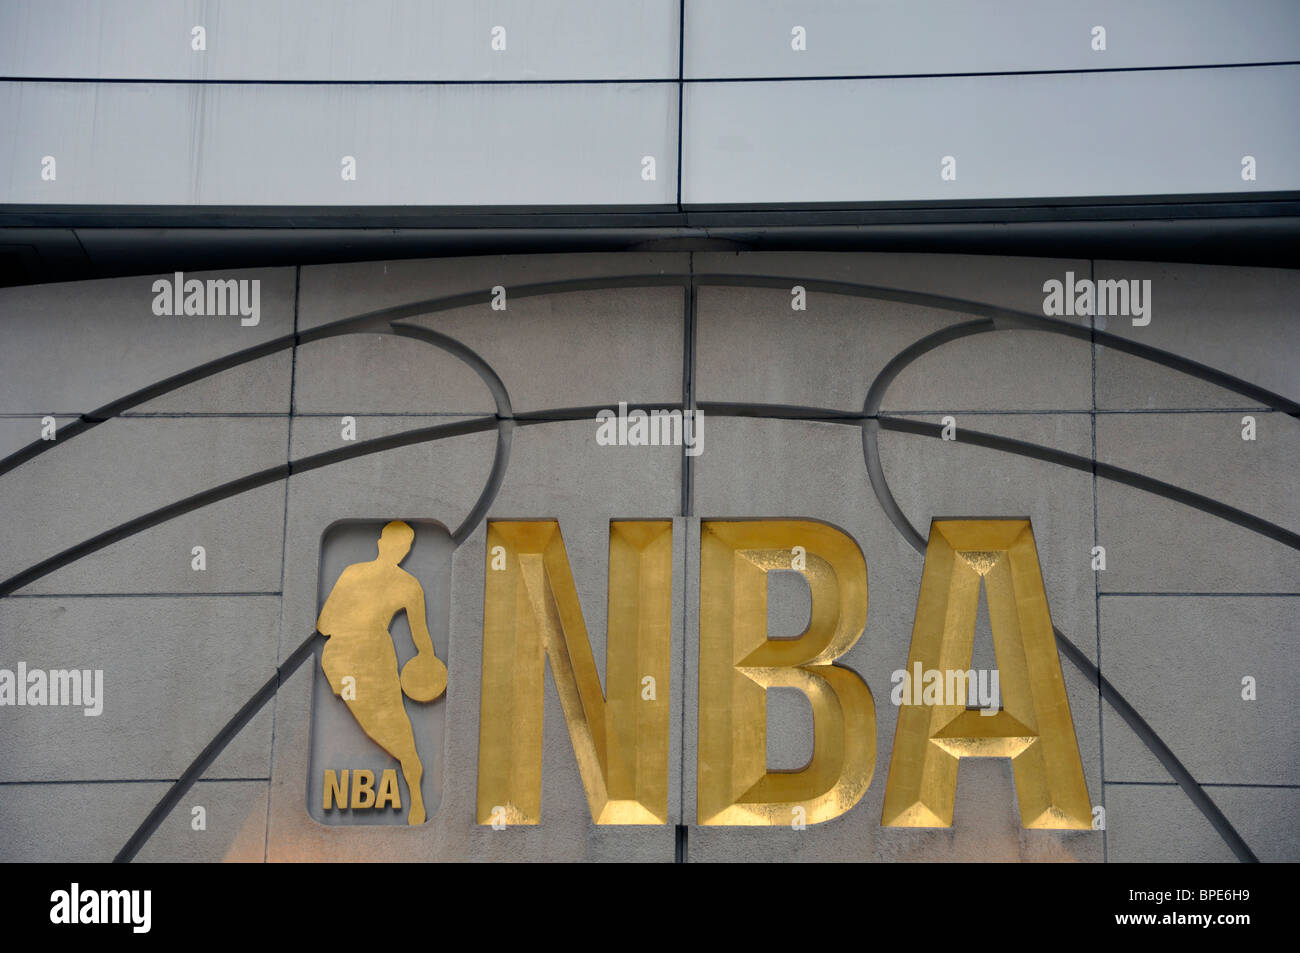 NBA Store  Manhattan, NY 10017